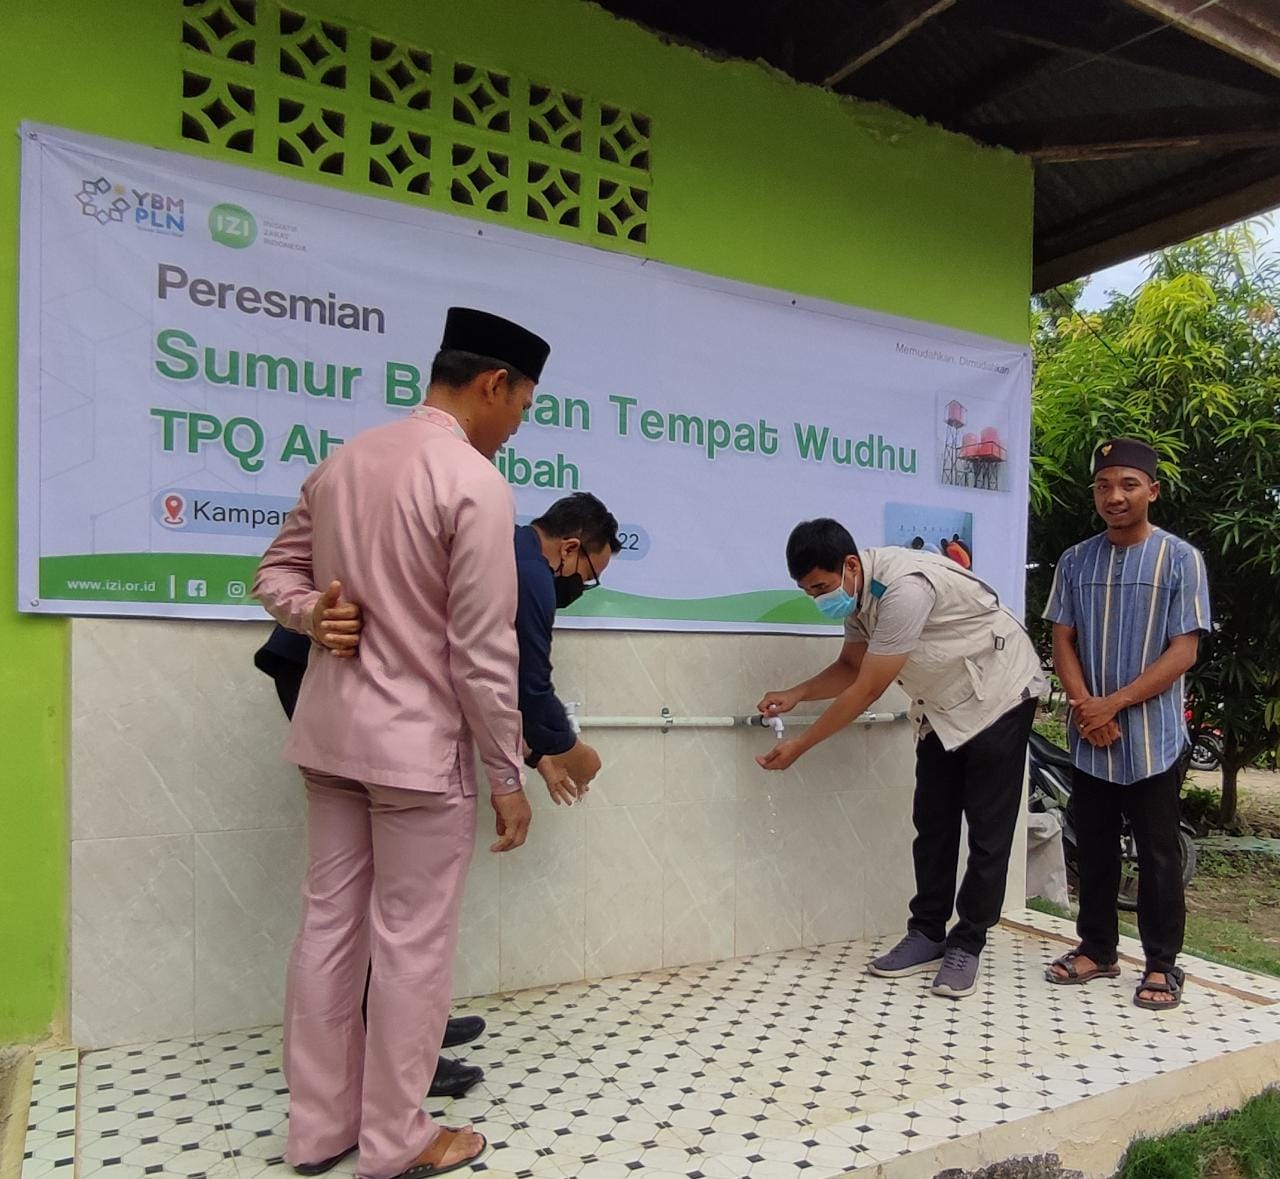 Yayasan Baitul Mal (YBM) PLN dan IZI Riau Resmikan Sumur Bor dan Tempat Wudhu